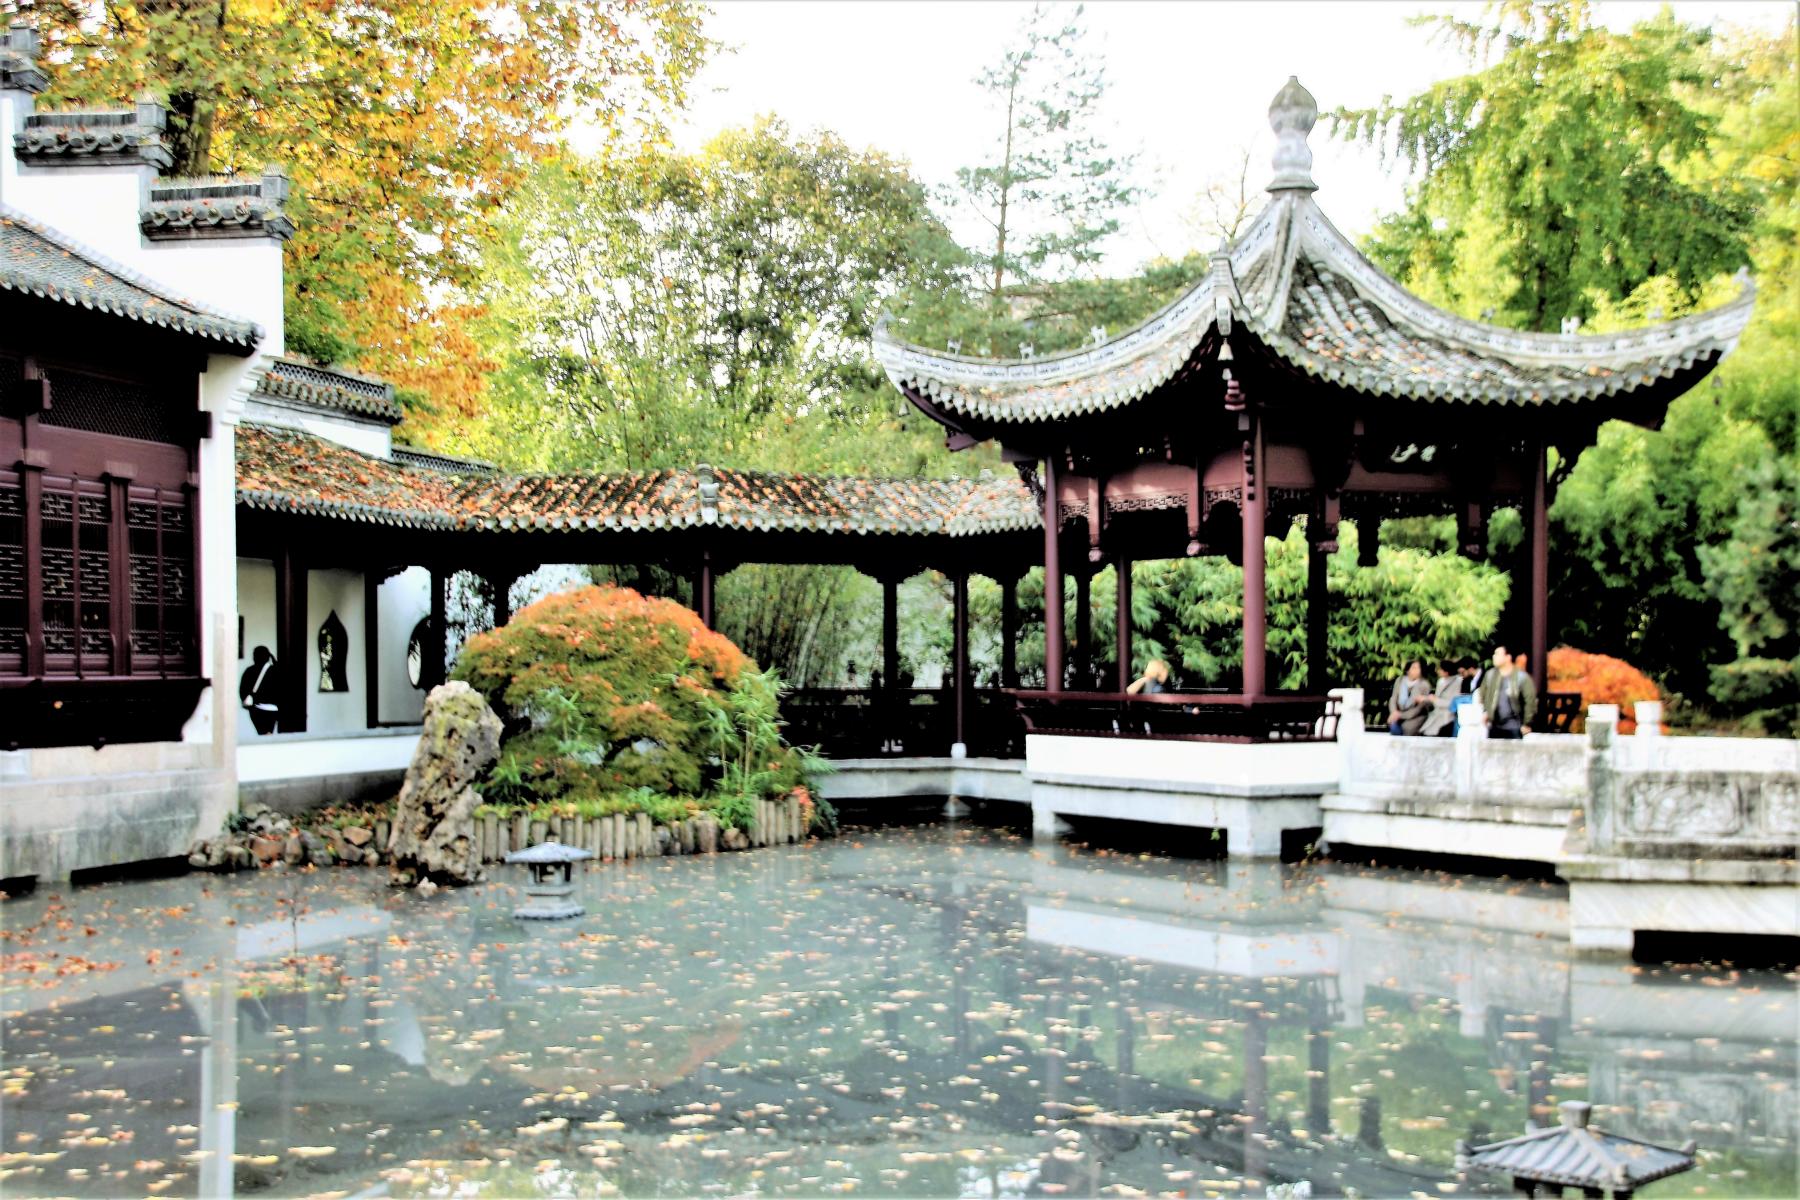 (Wieder) Erffnung des Chinesischen Gartens im Bethmann-Park. < >< >FOTOS: 2019-10-25 Erffnung Chinesischer Garten< > 